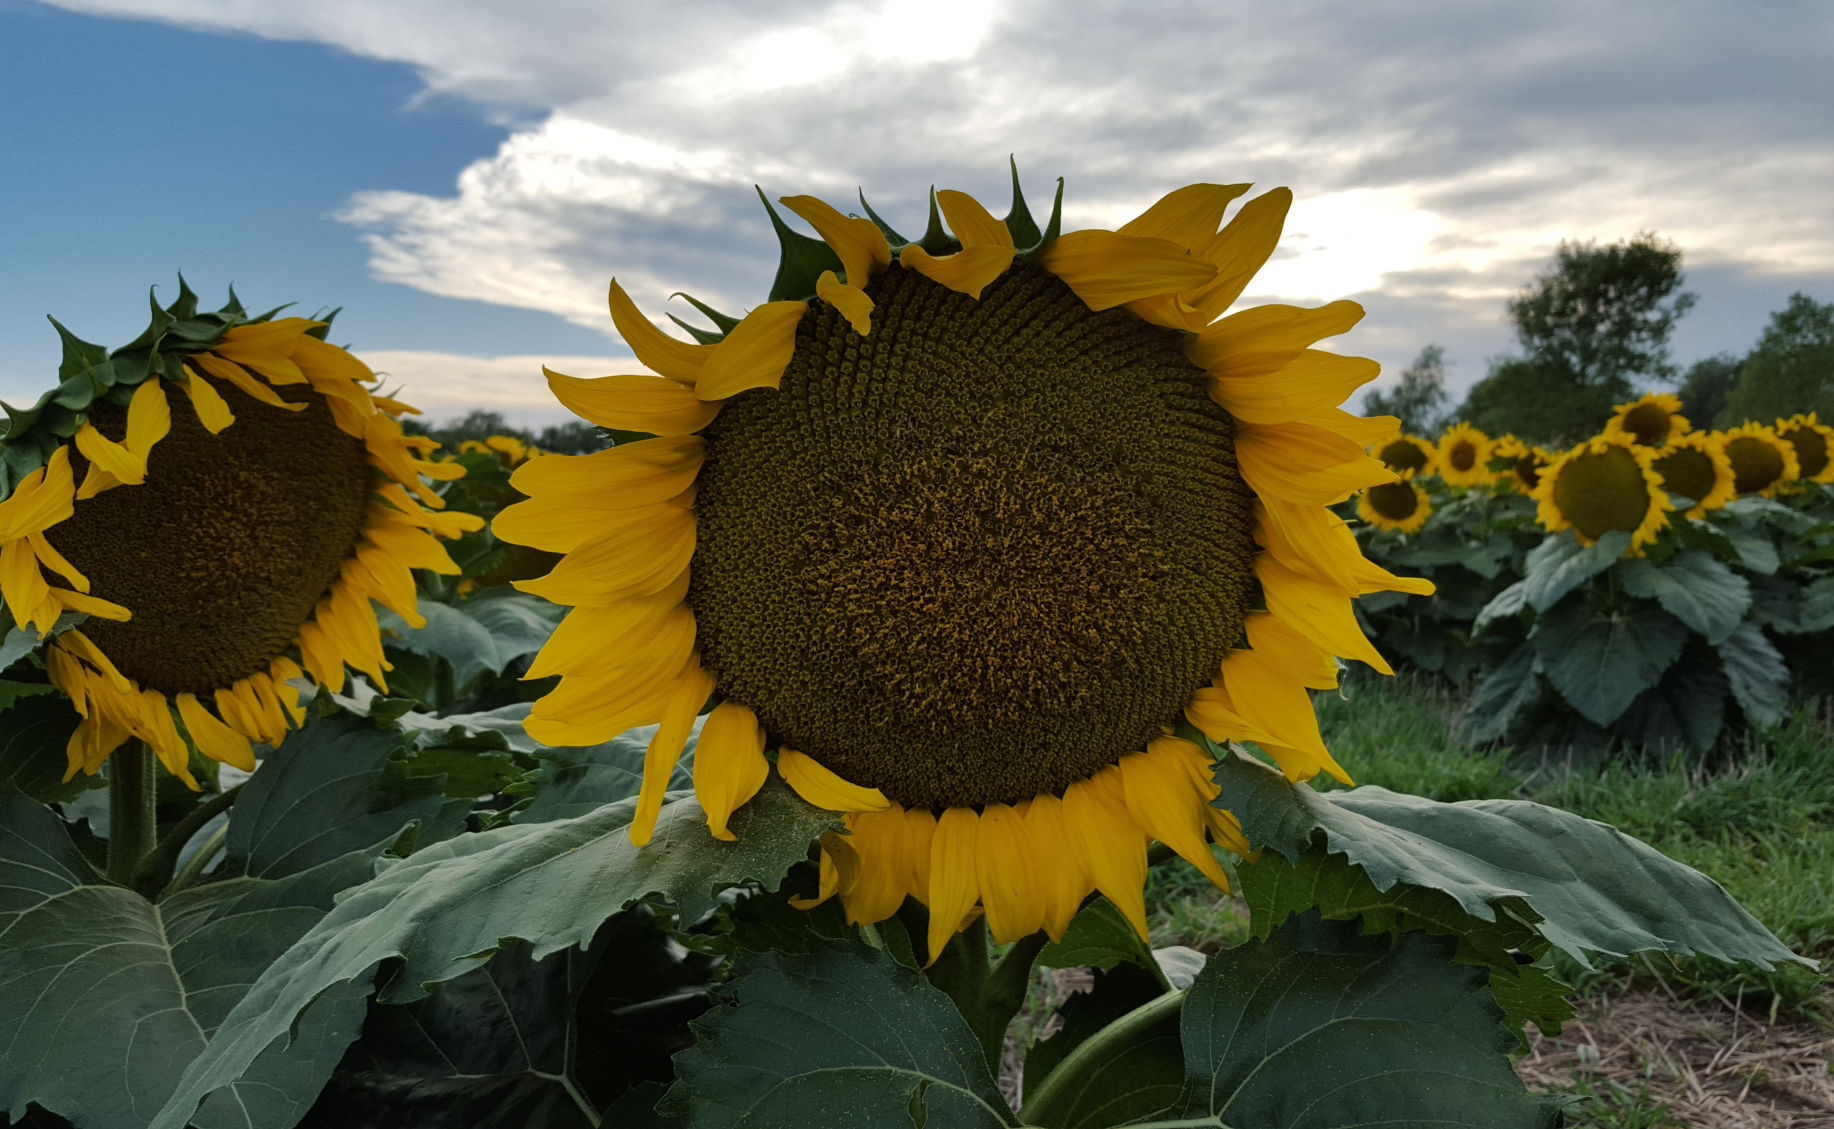 Sunflower By Barbara Austin, St. John, Kansas.